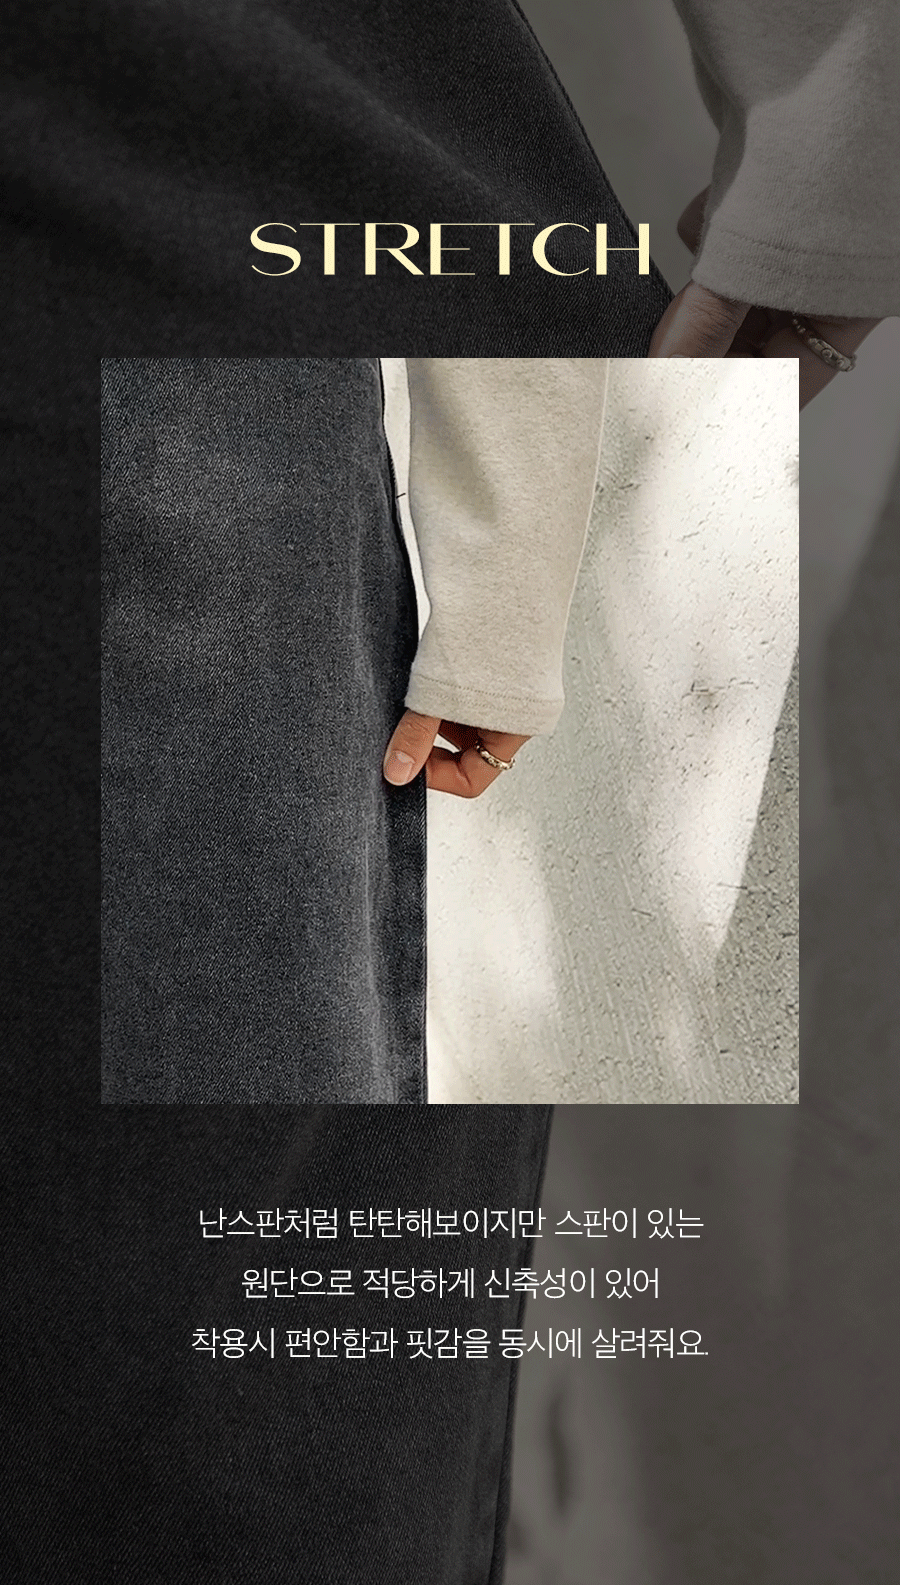 노컷 3TYPE 배기핏 흑청 기모데님